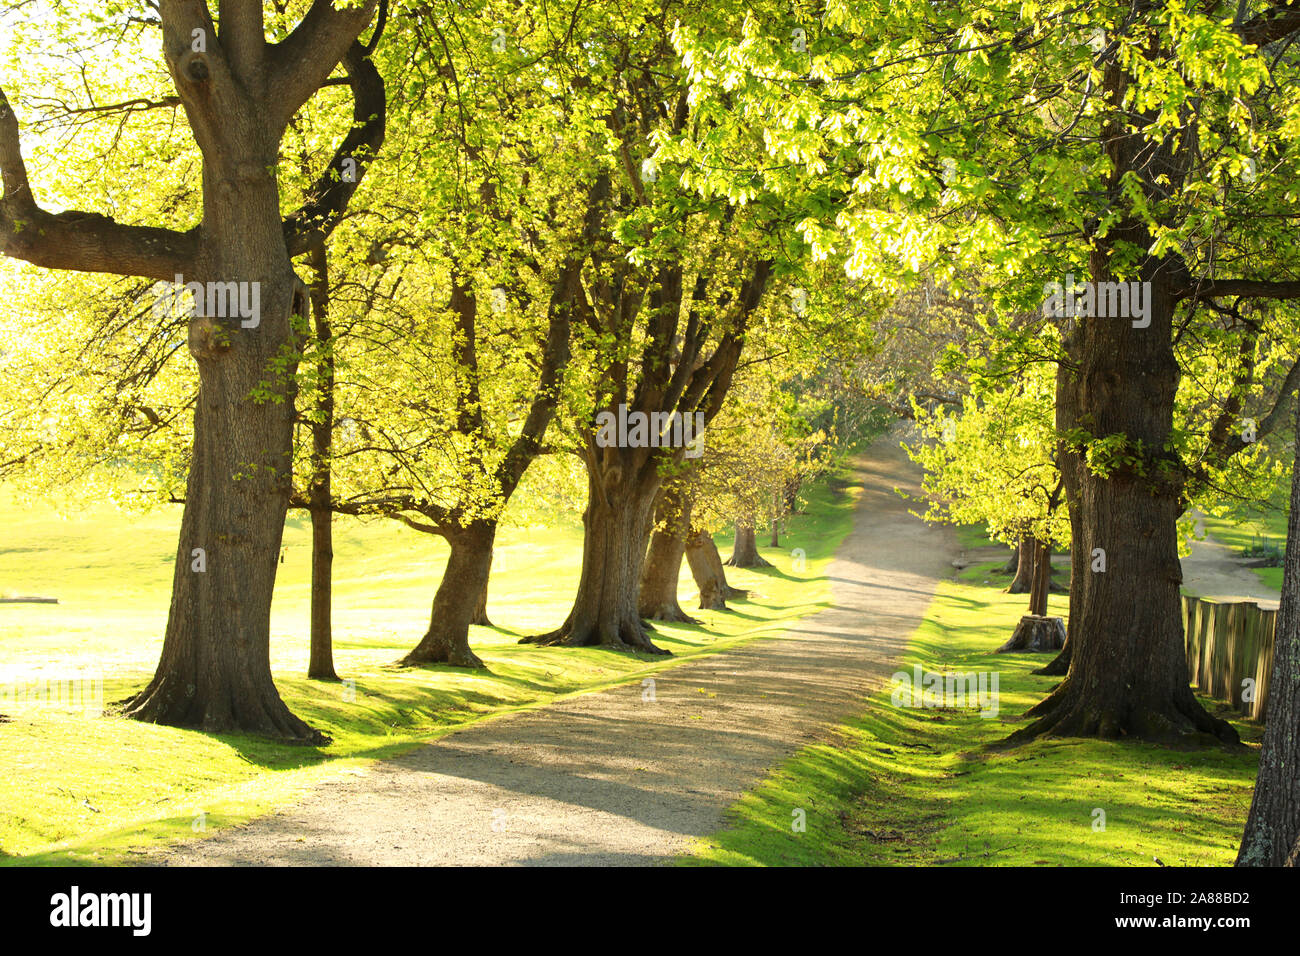 Beaux chênes verts bordant un chemin qui mène vers une destination inconnue. Matin de printemps ou le soir avec la lumière airy atmsophere. Banque D'Images